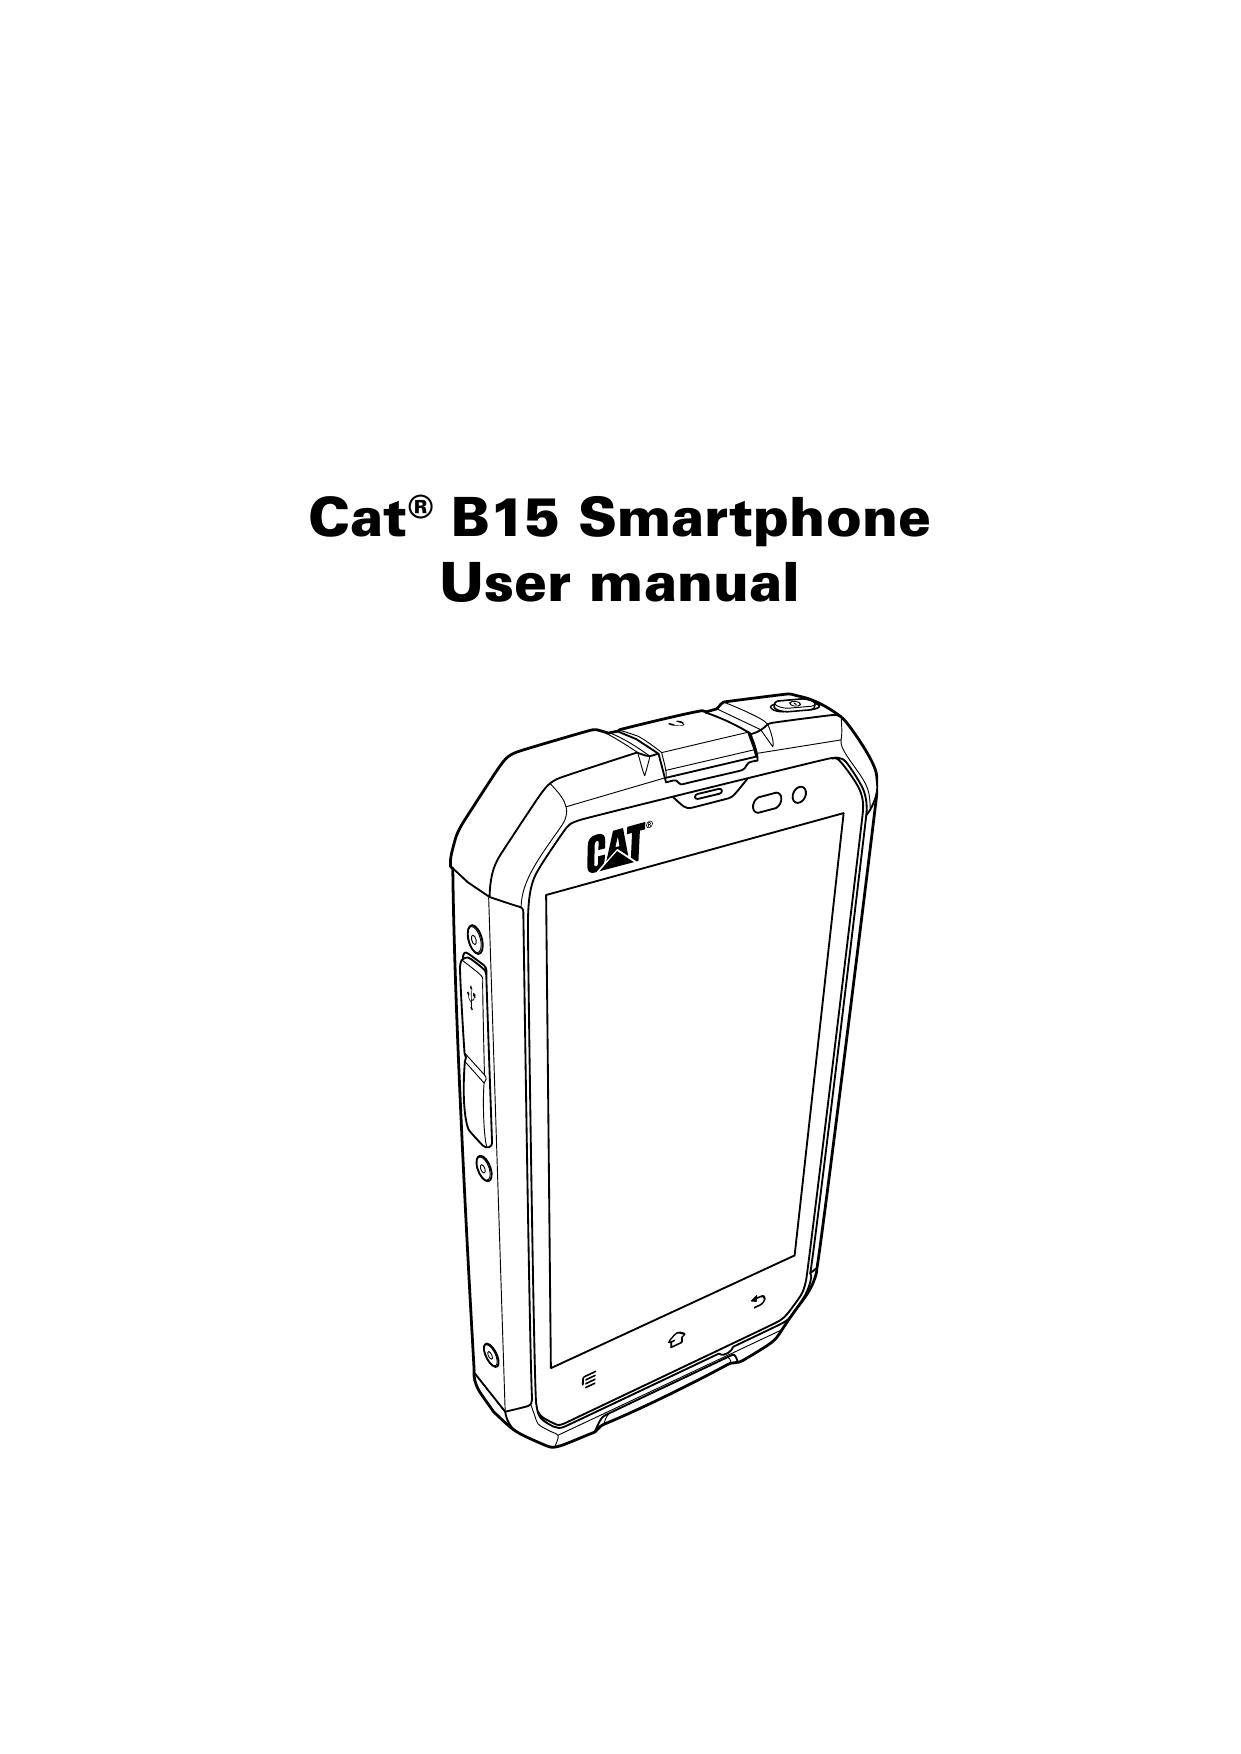 Cat® B15 SmartphoneUser manual